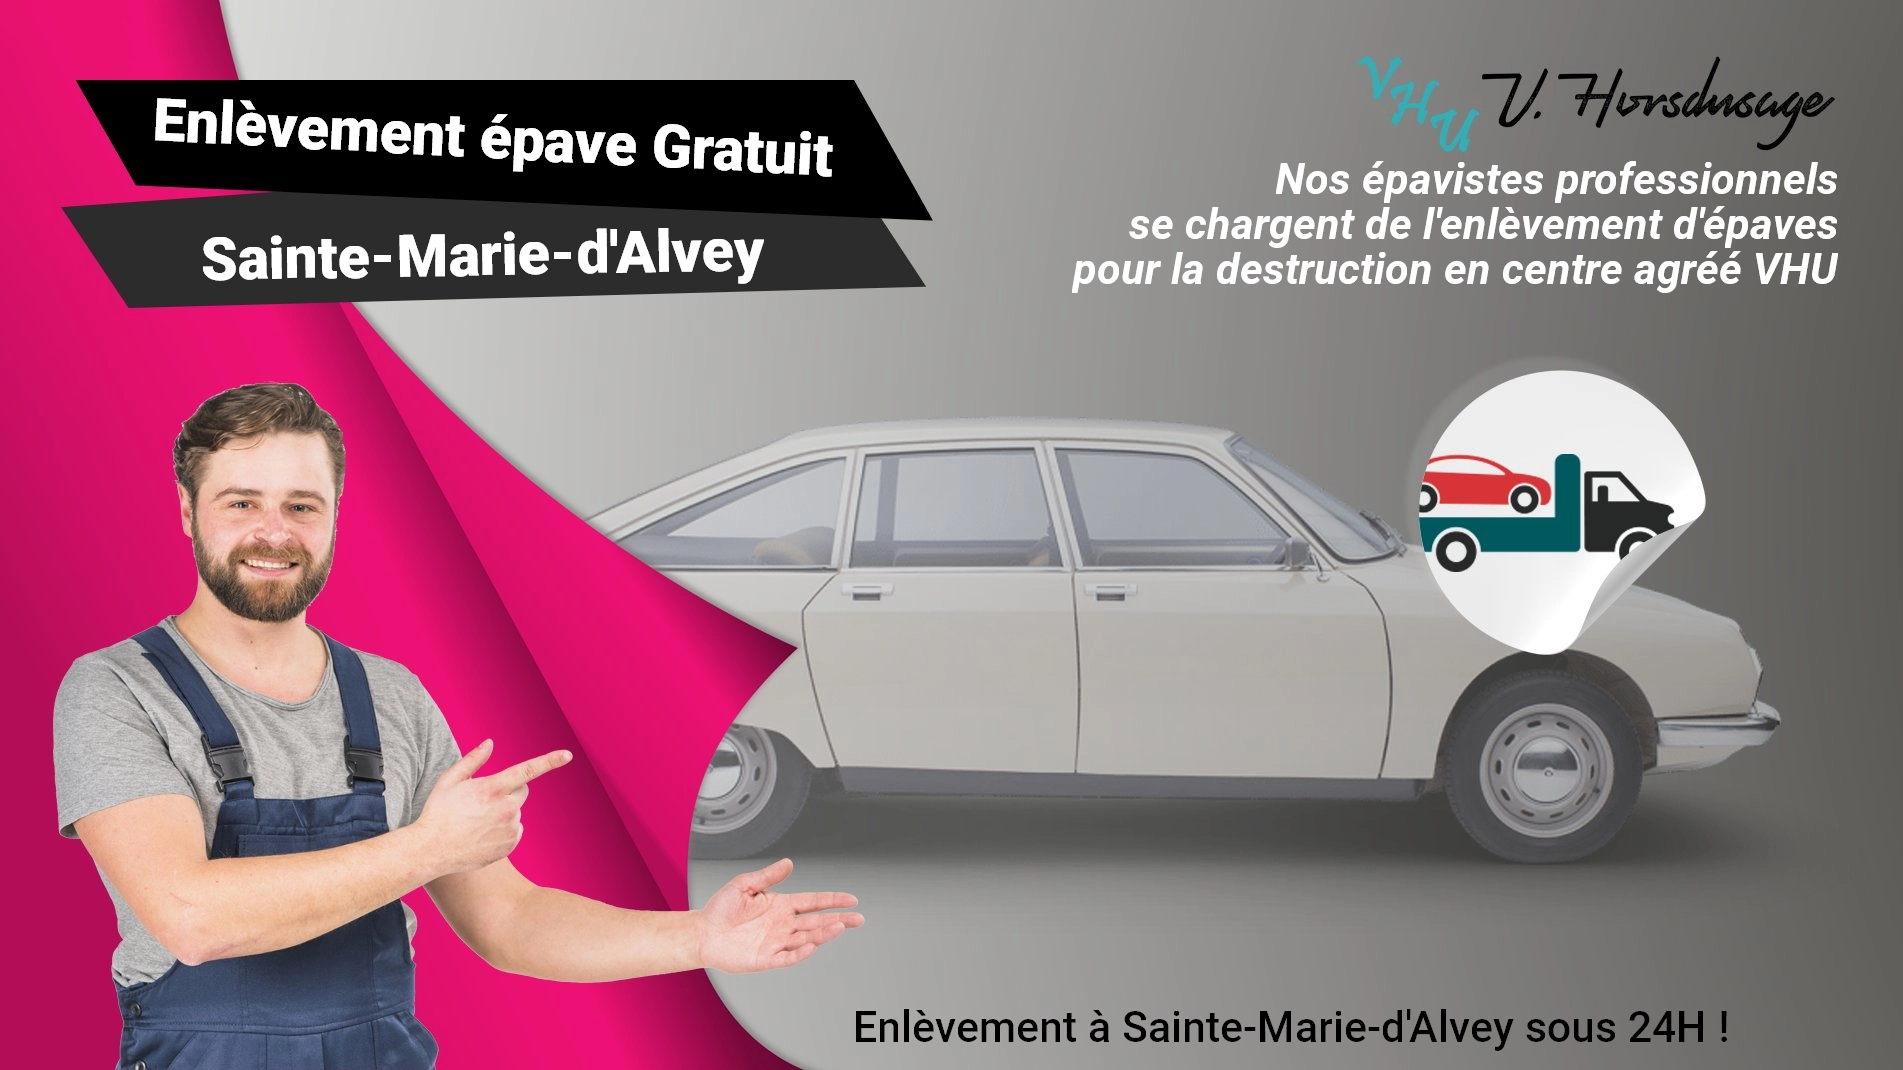 Pour un enlèvement gratuit à Sainte-Marie-d'Alvey, contactez nos épavistes agréé VHU